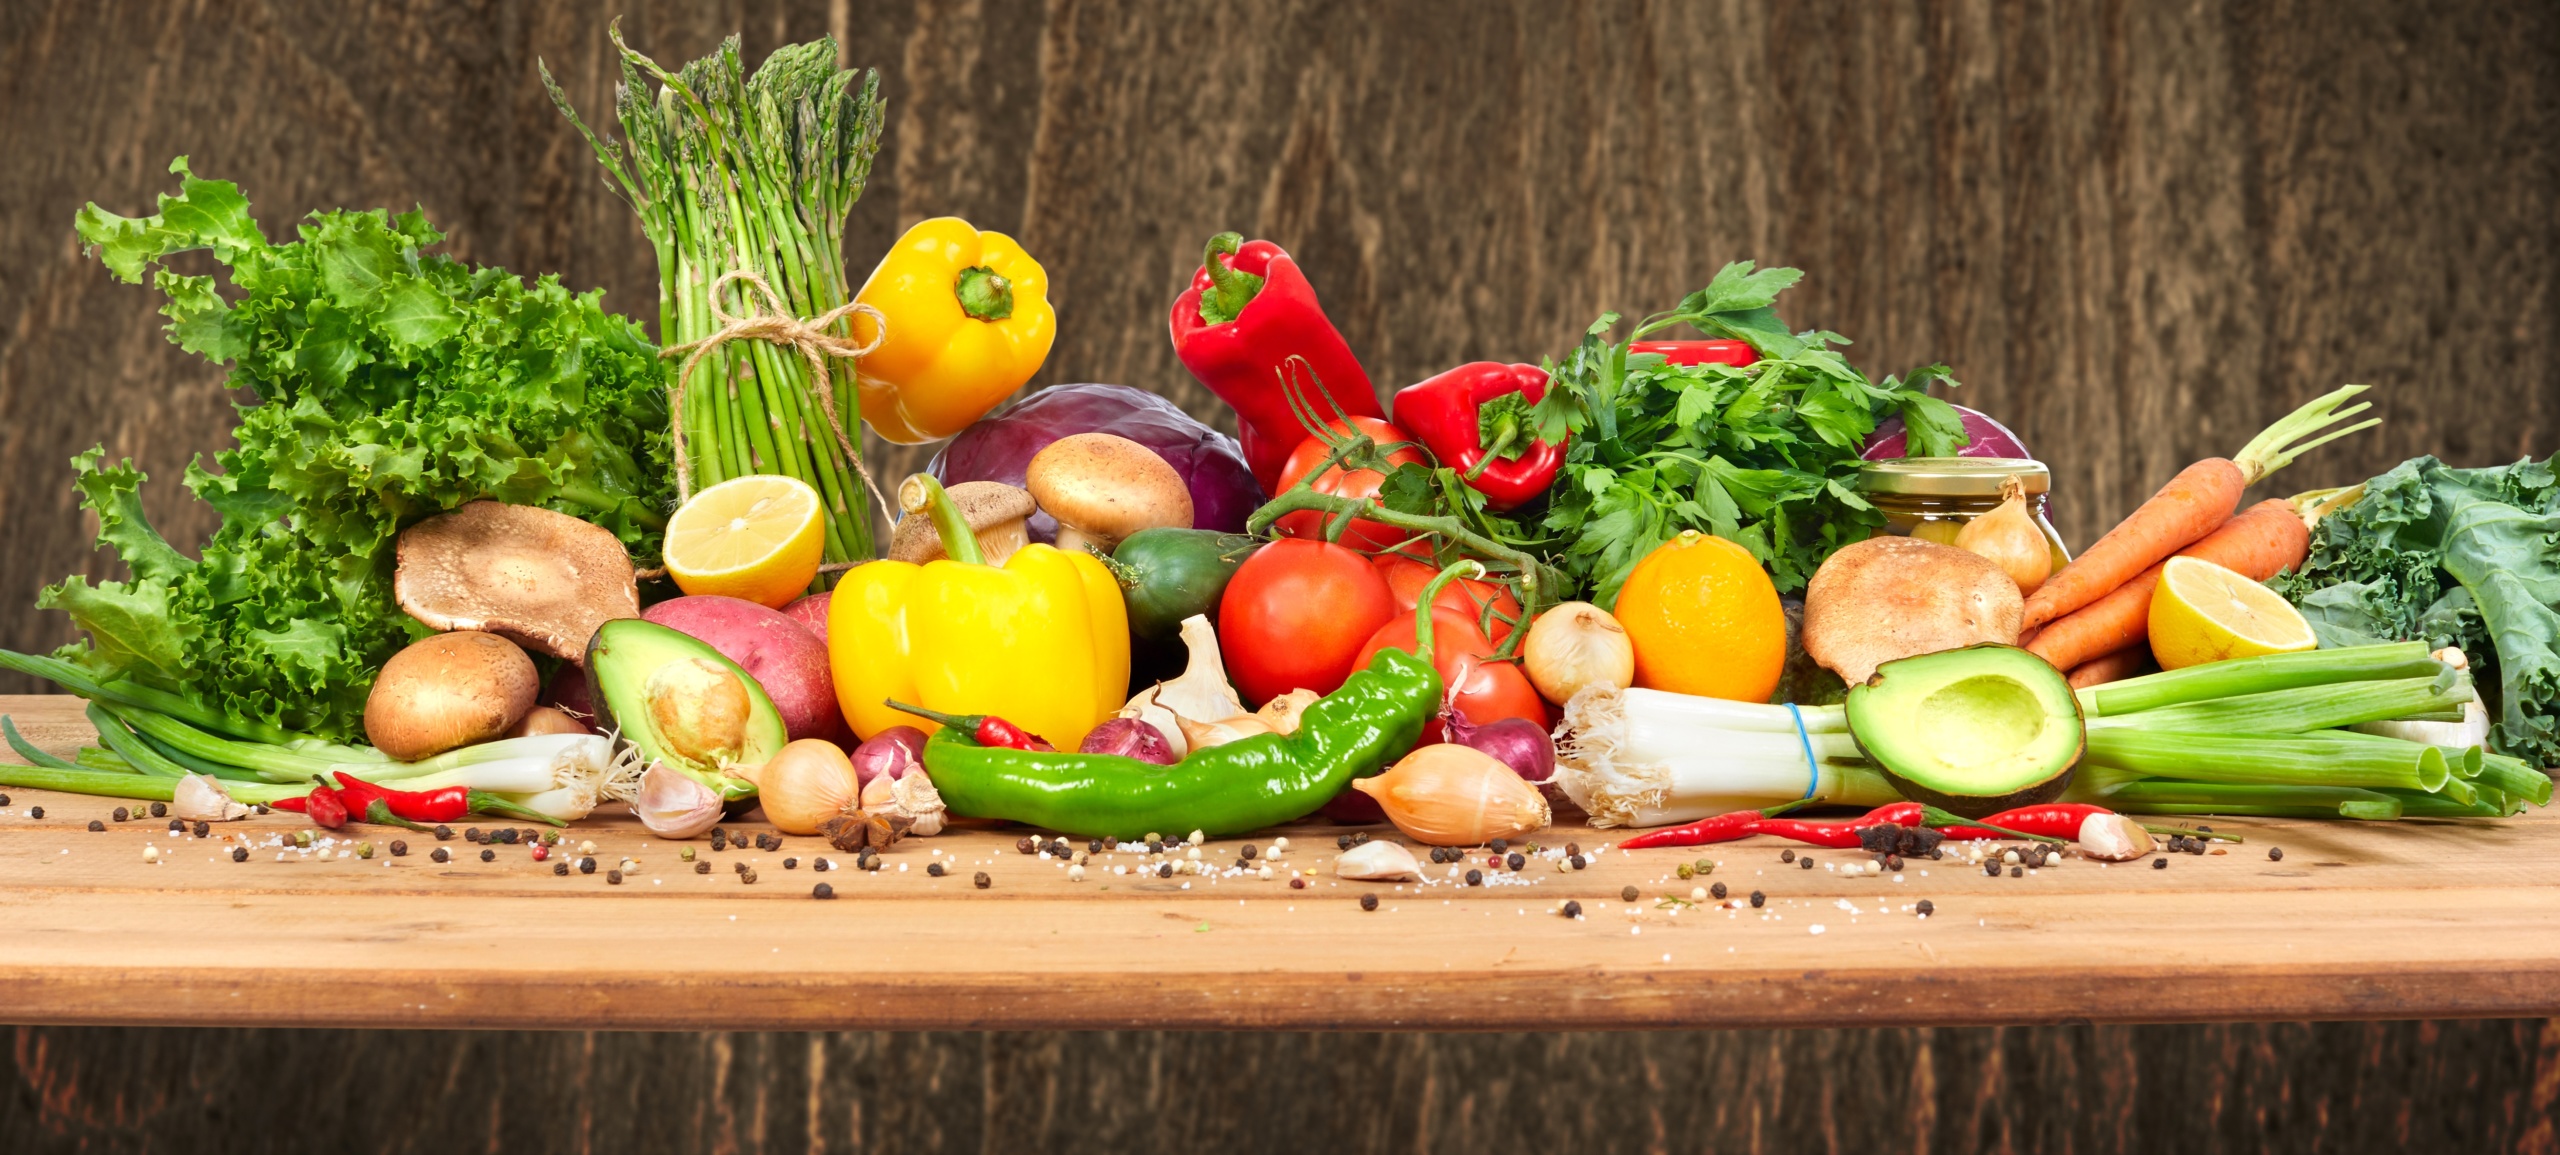 Какие овощи лучше всего подходят для салатов при сахарном диабете?